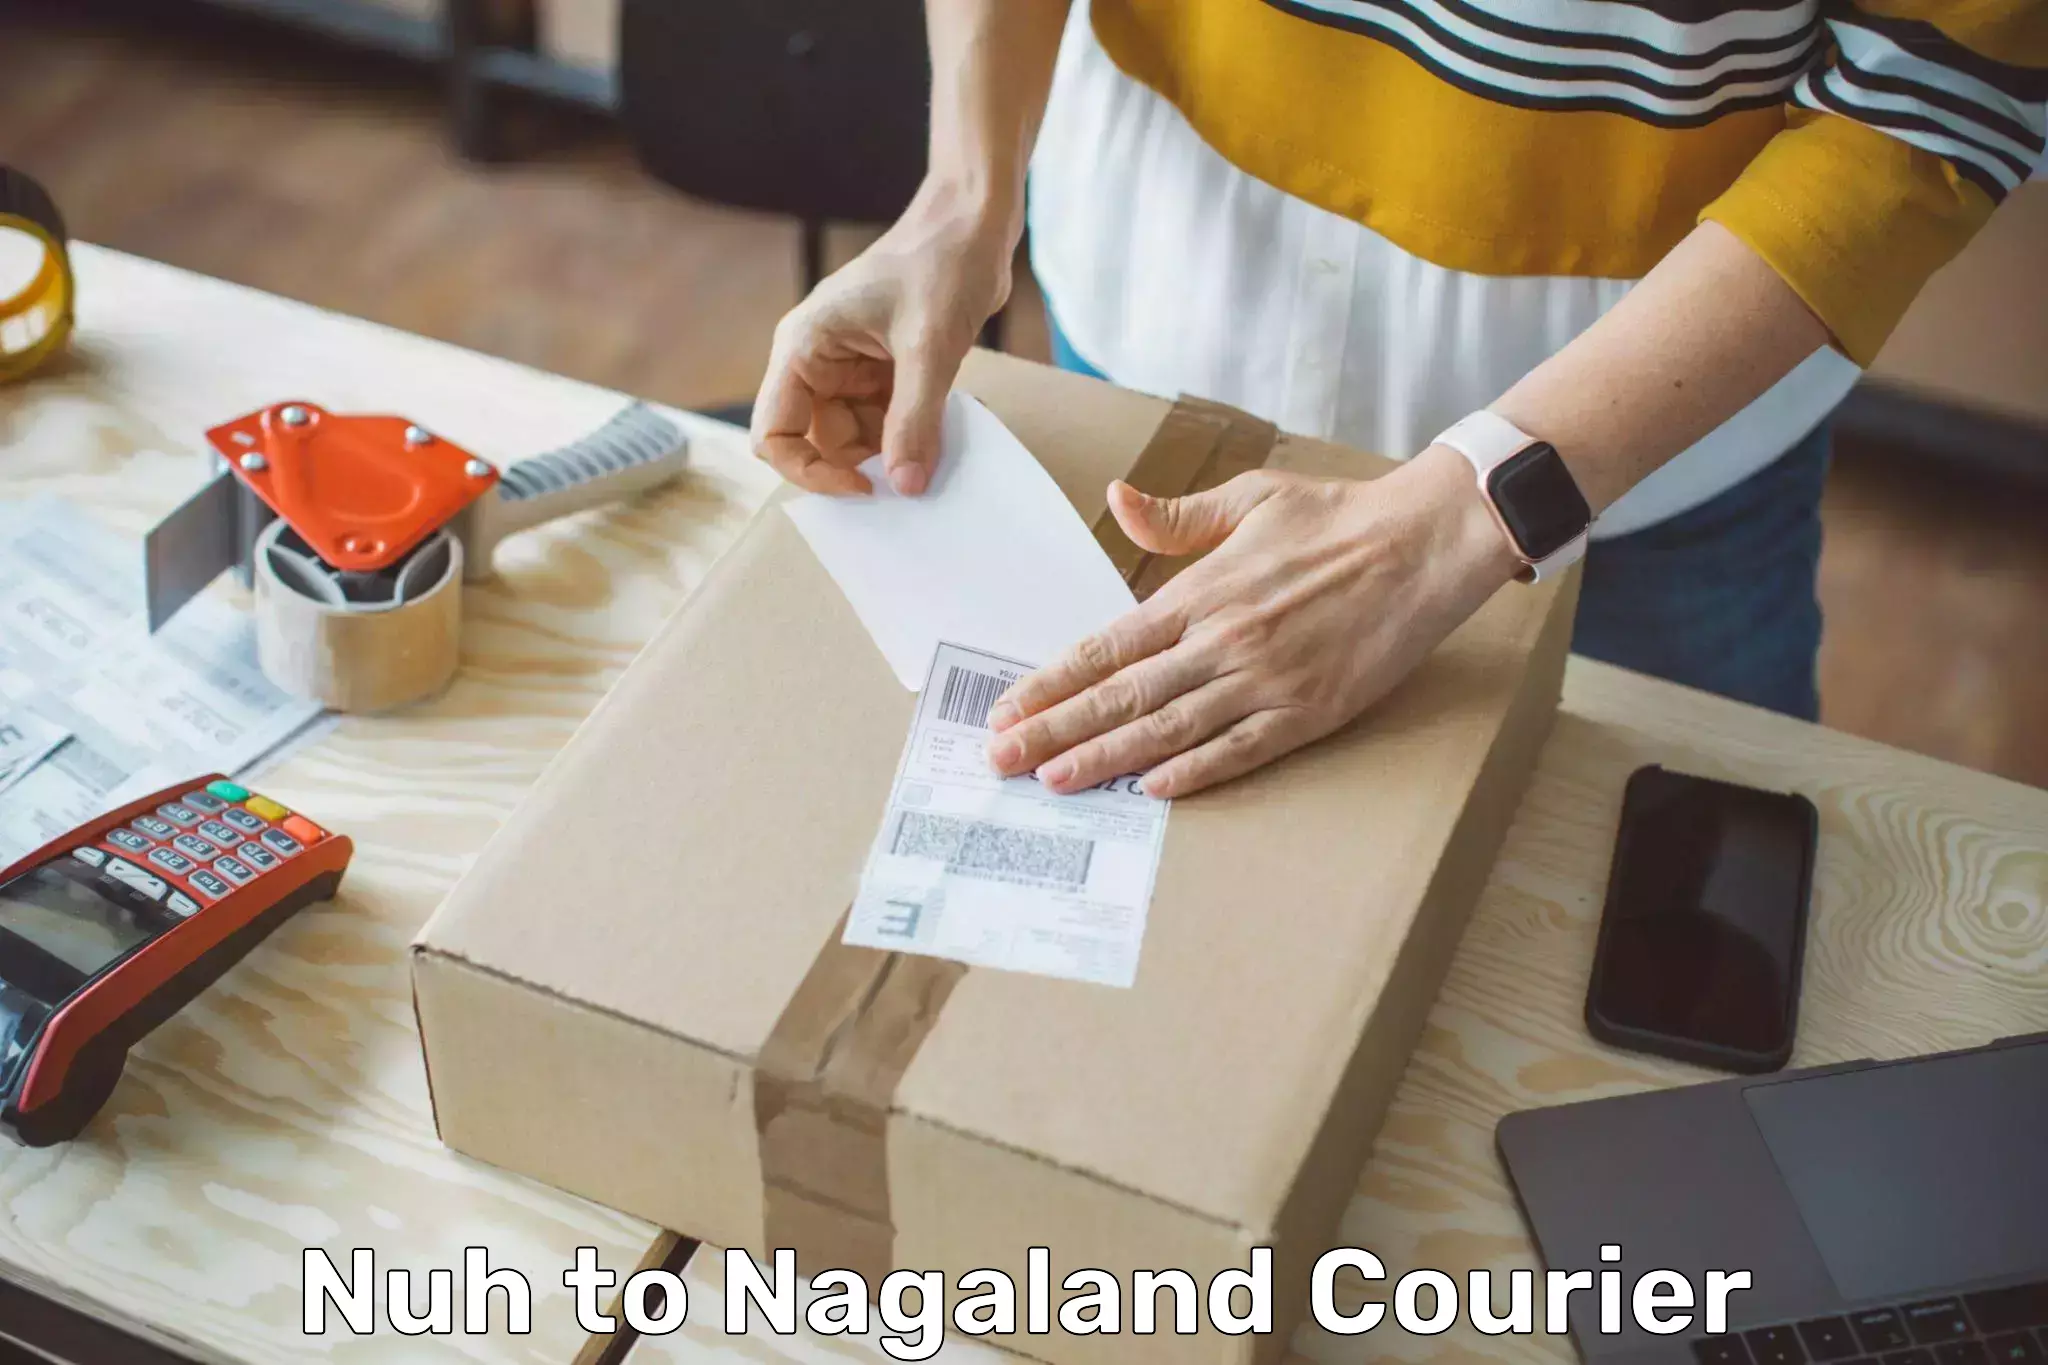 Express mail service Nuh to Nagaland